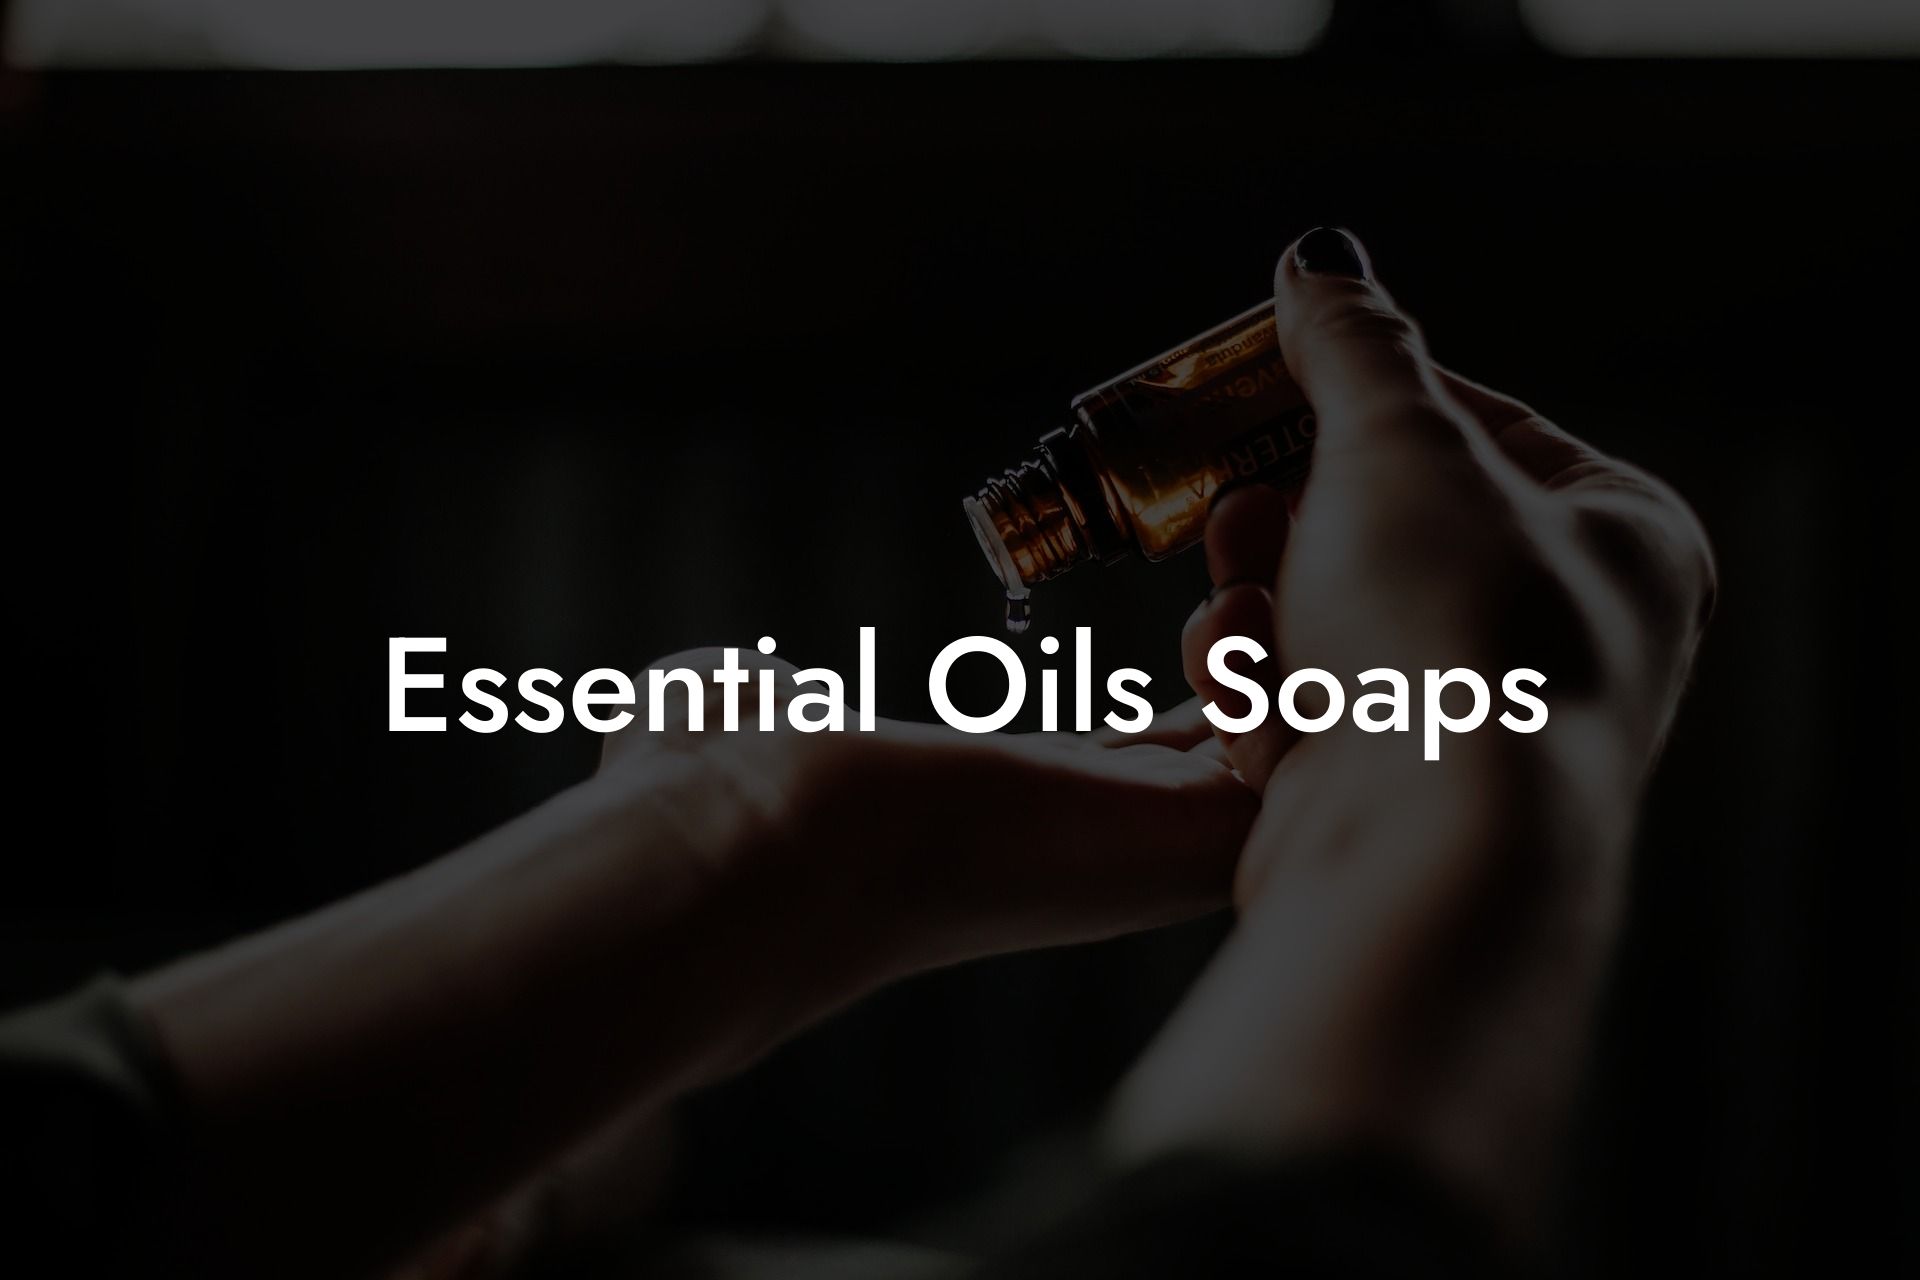 Essential Oils Soaps